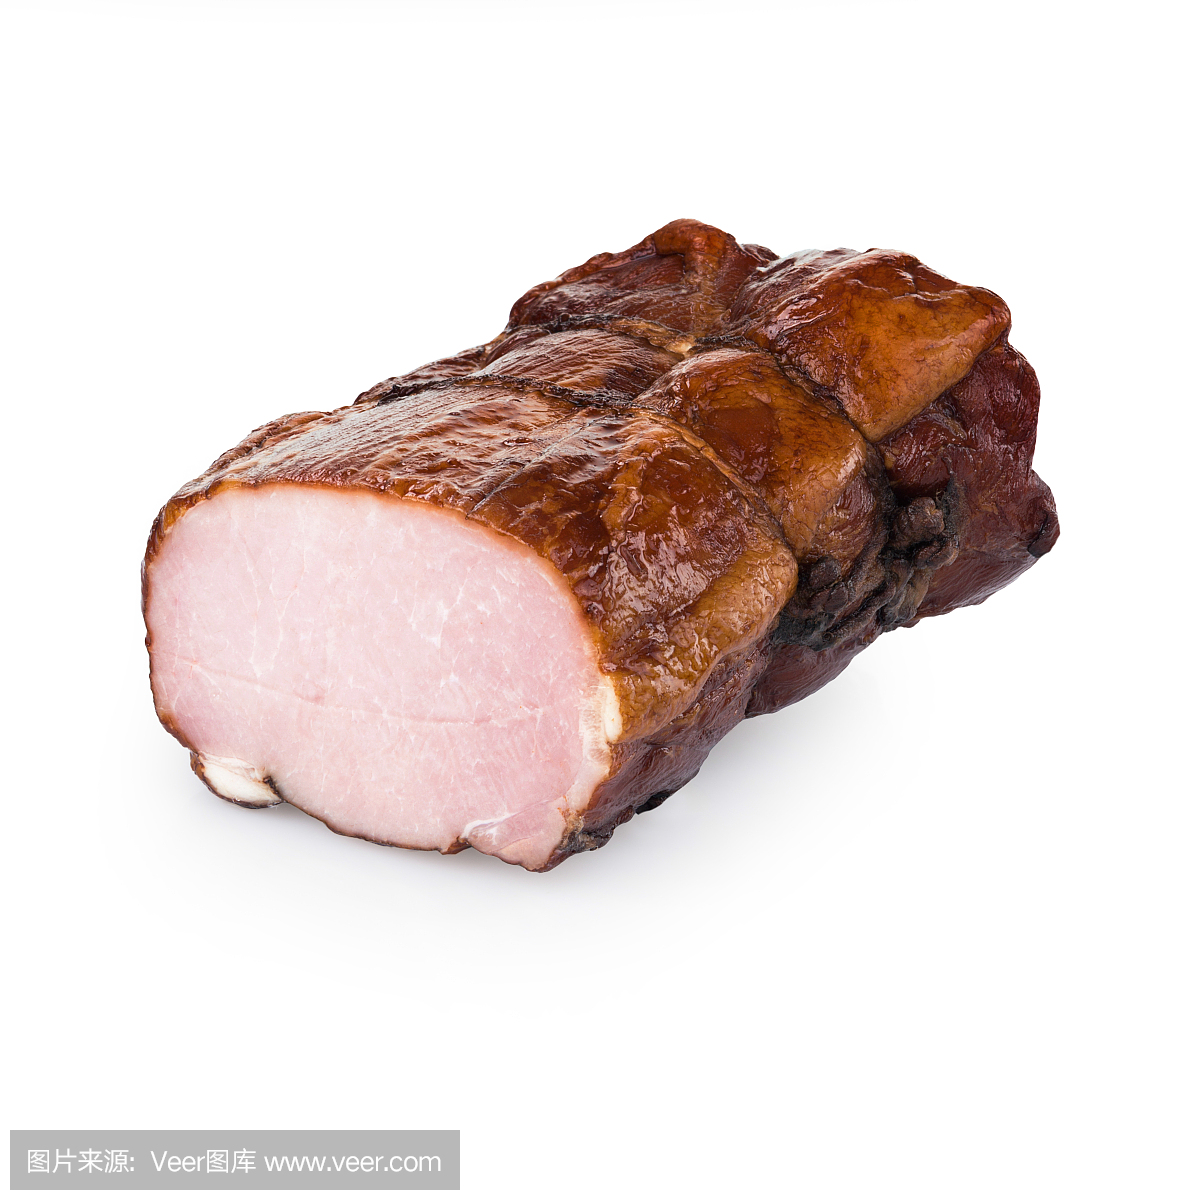 白色背景上孤立的一块猪肉火腿。肉品加工厂的产品